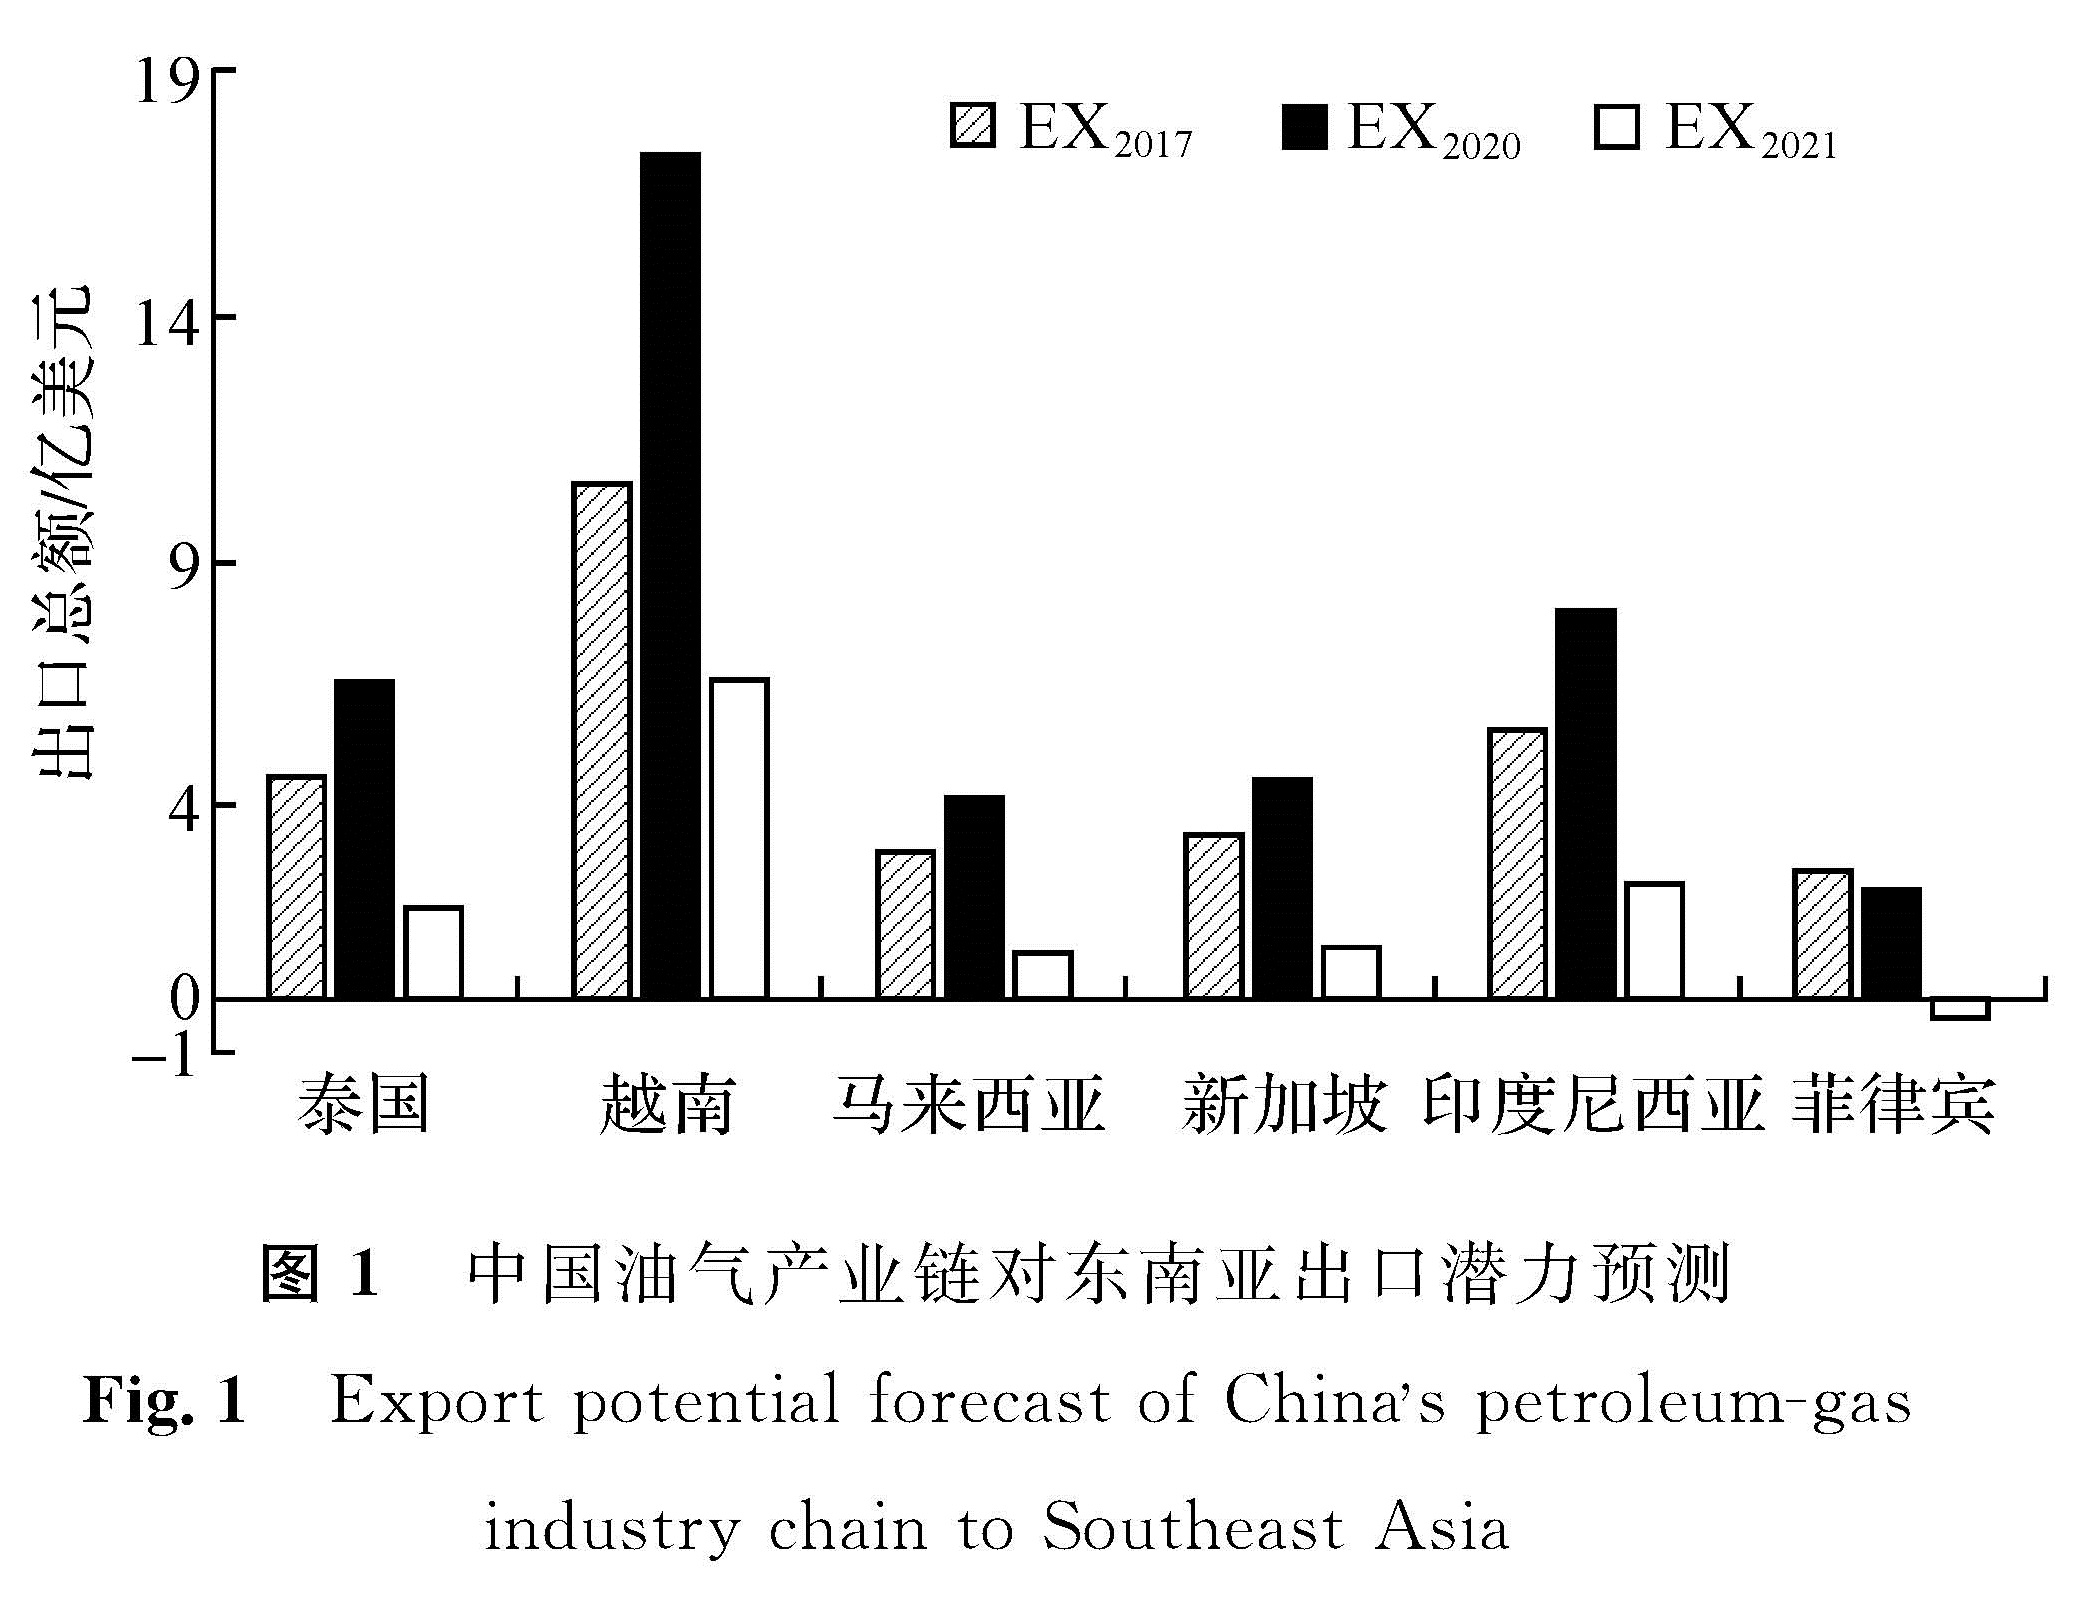 图1 中国油气产业链对东南亚出口潜力预测<br/>Fig.1 Export potential forecast of Chinas petroleum-gas industry chain to Southeast Asia 